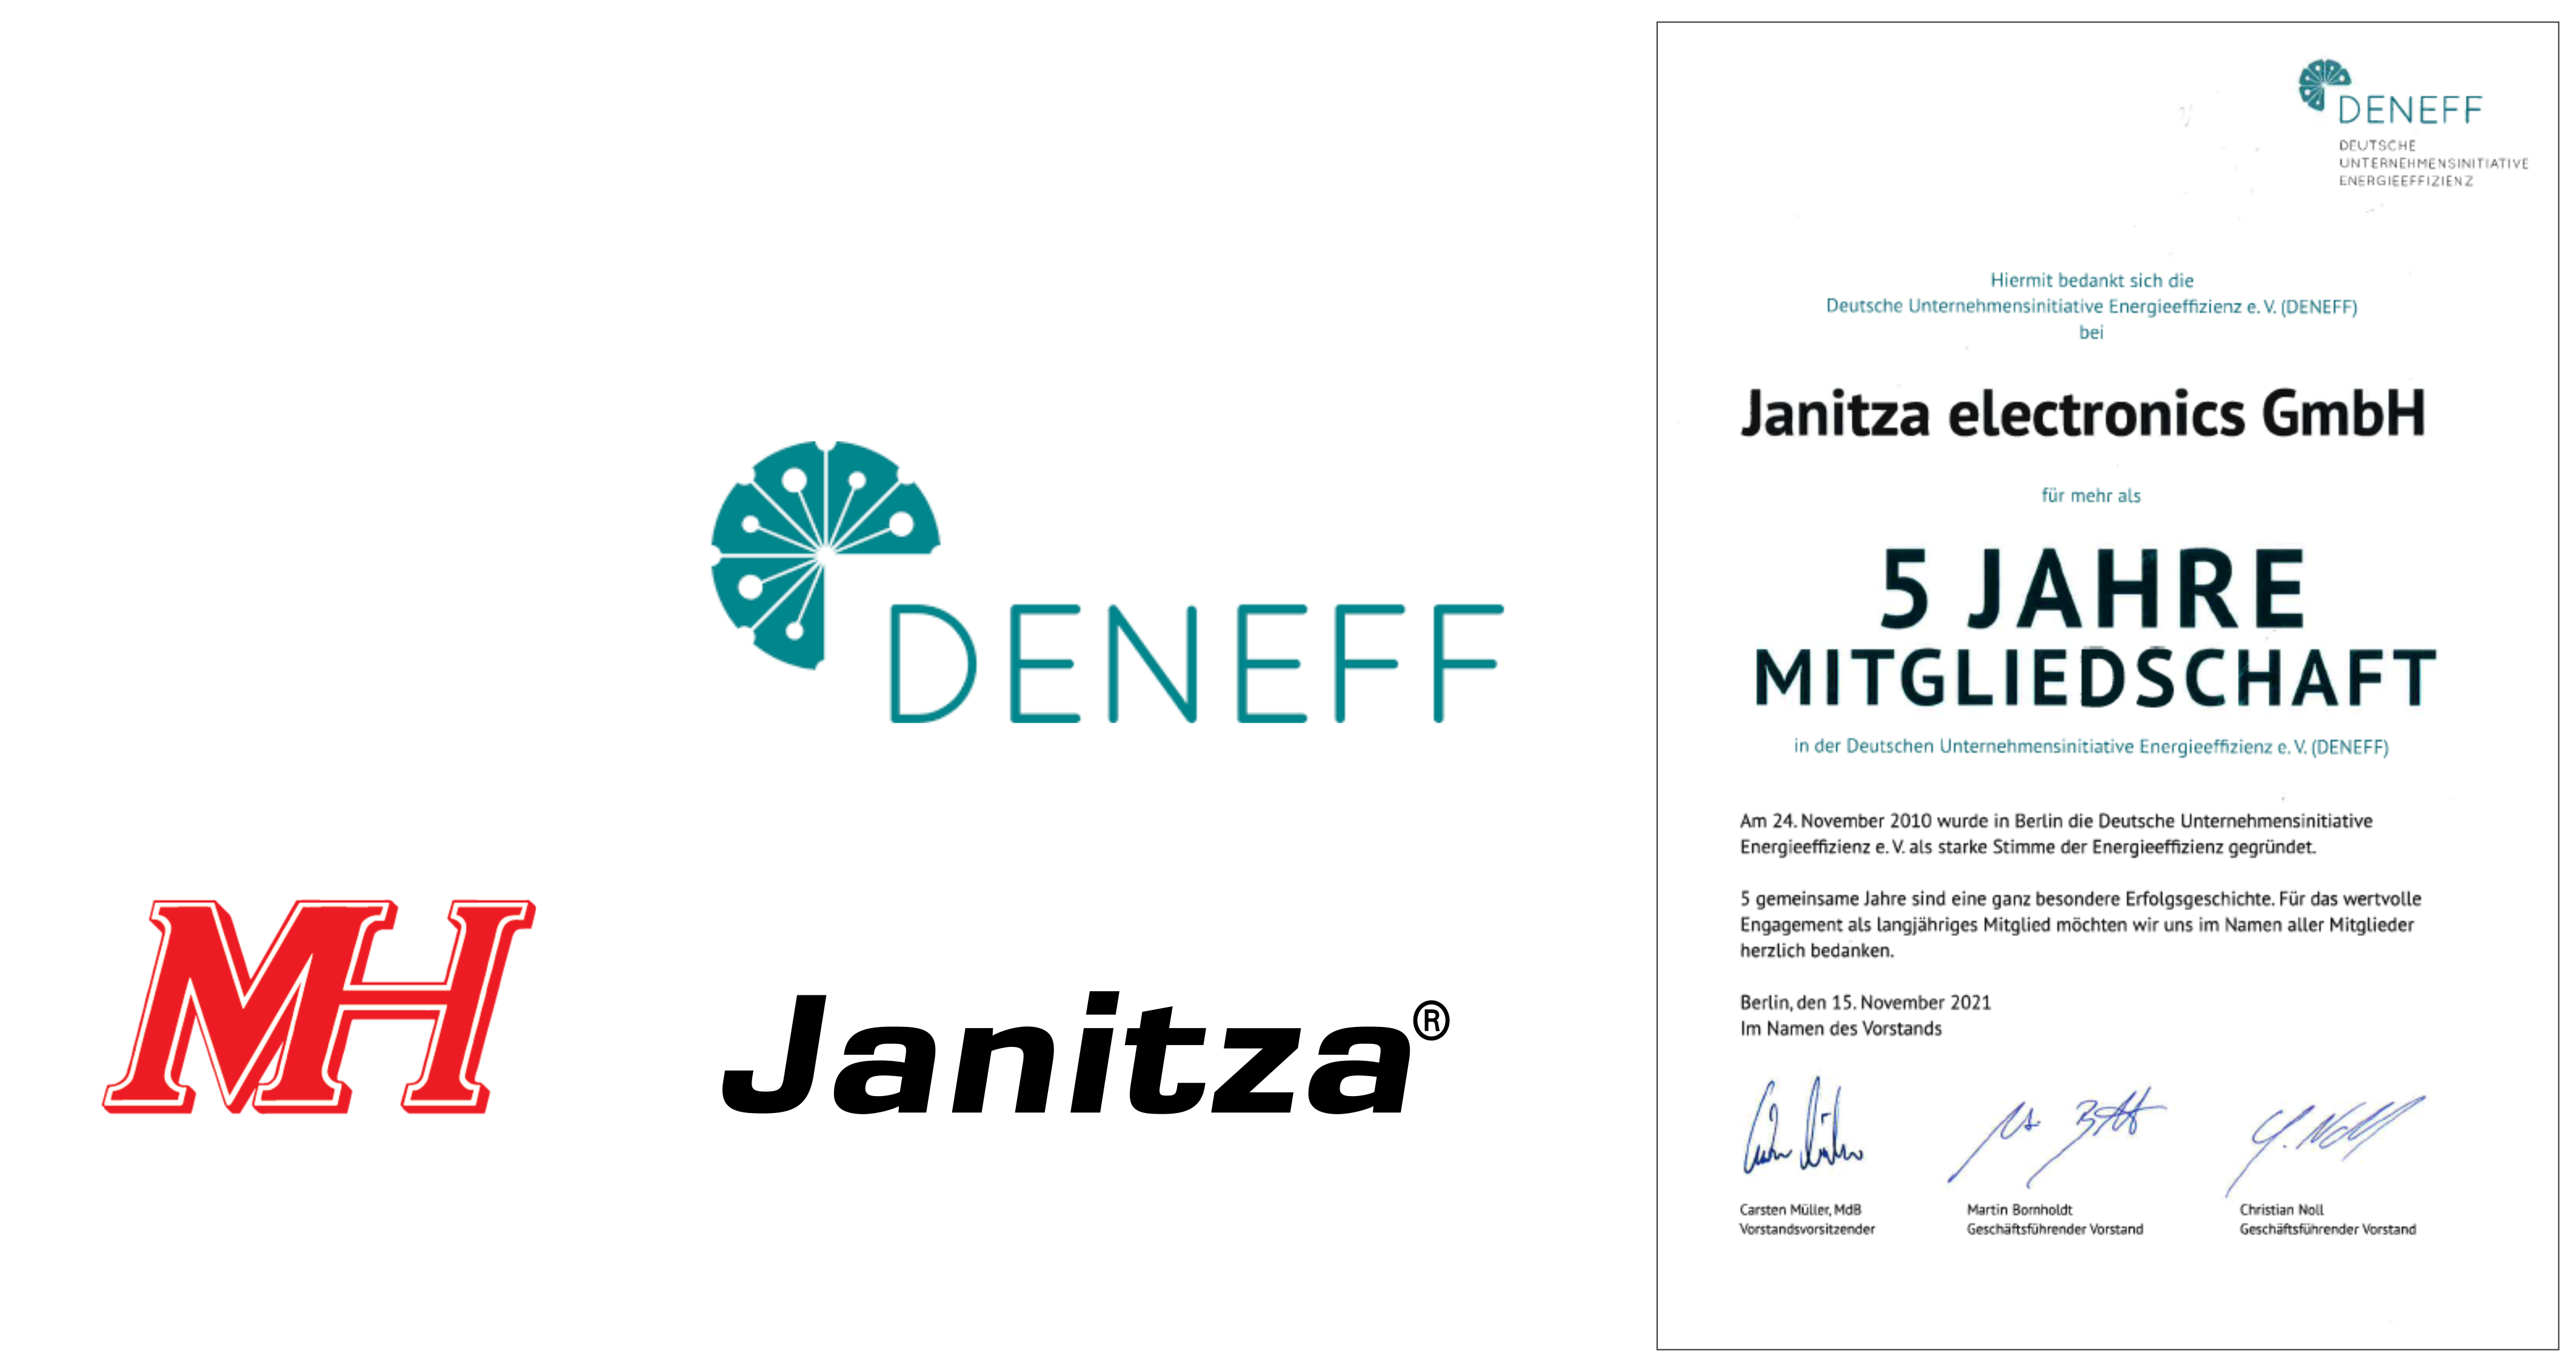 Janitza được trao chứng nhận 